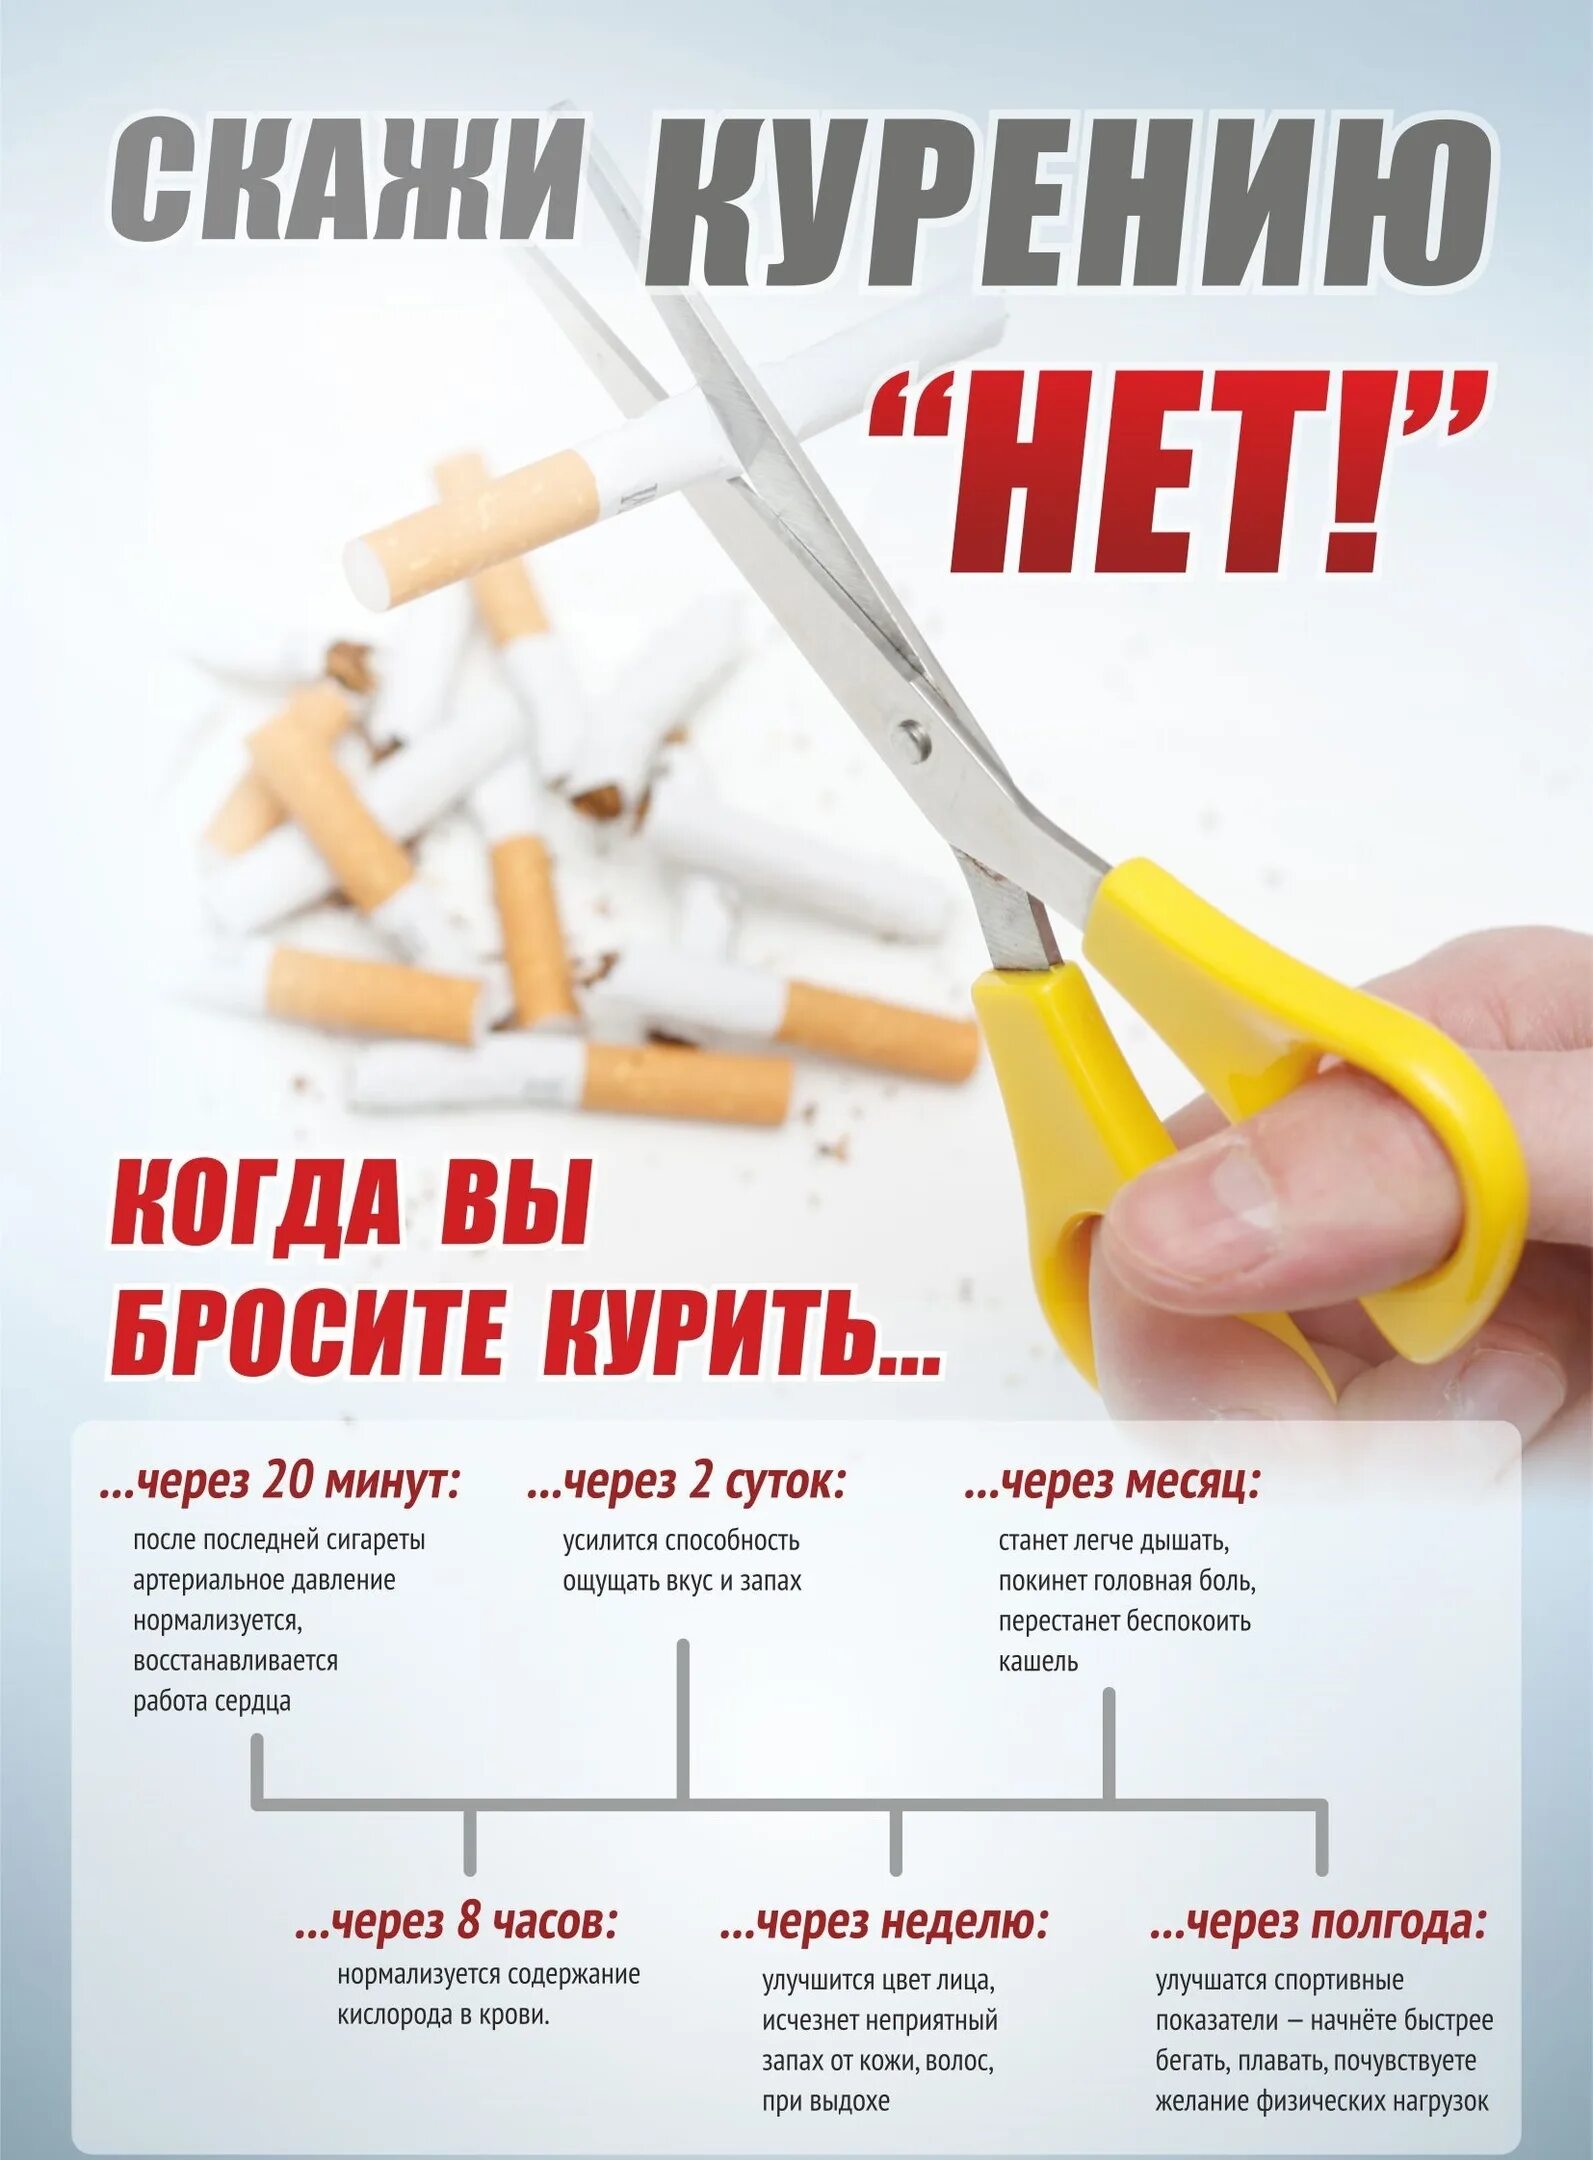 Александров бросить курить. Плакат «вред курения». Профилактика курения плакат. Пл акат о выреде курения. Плакат бросай курить.